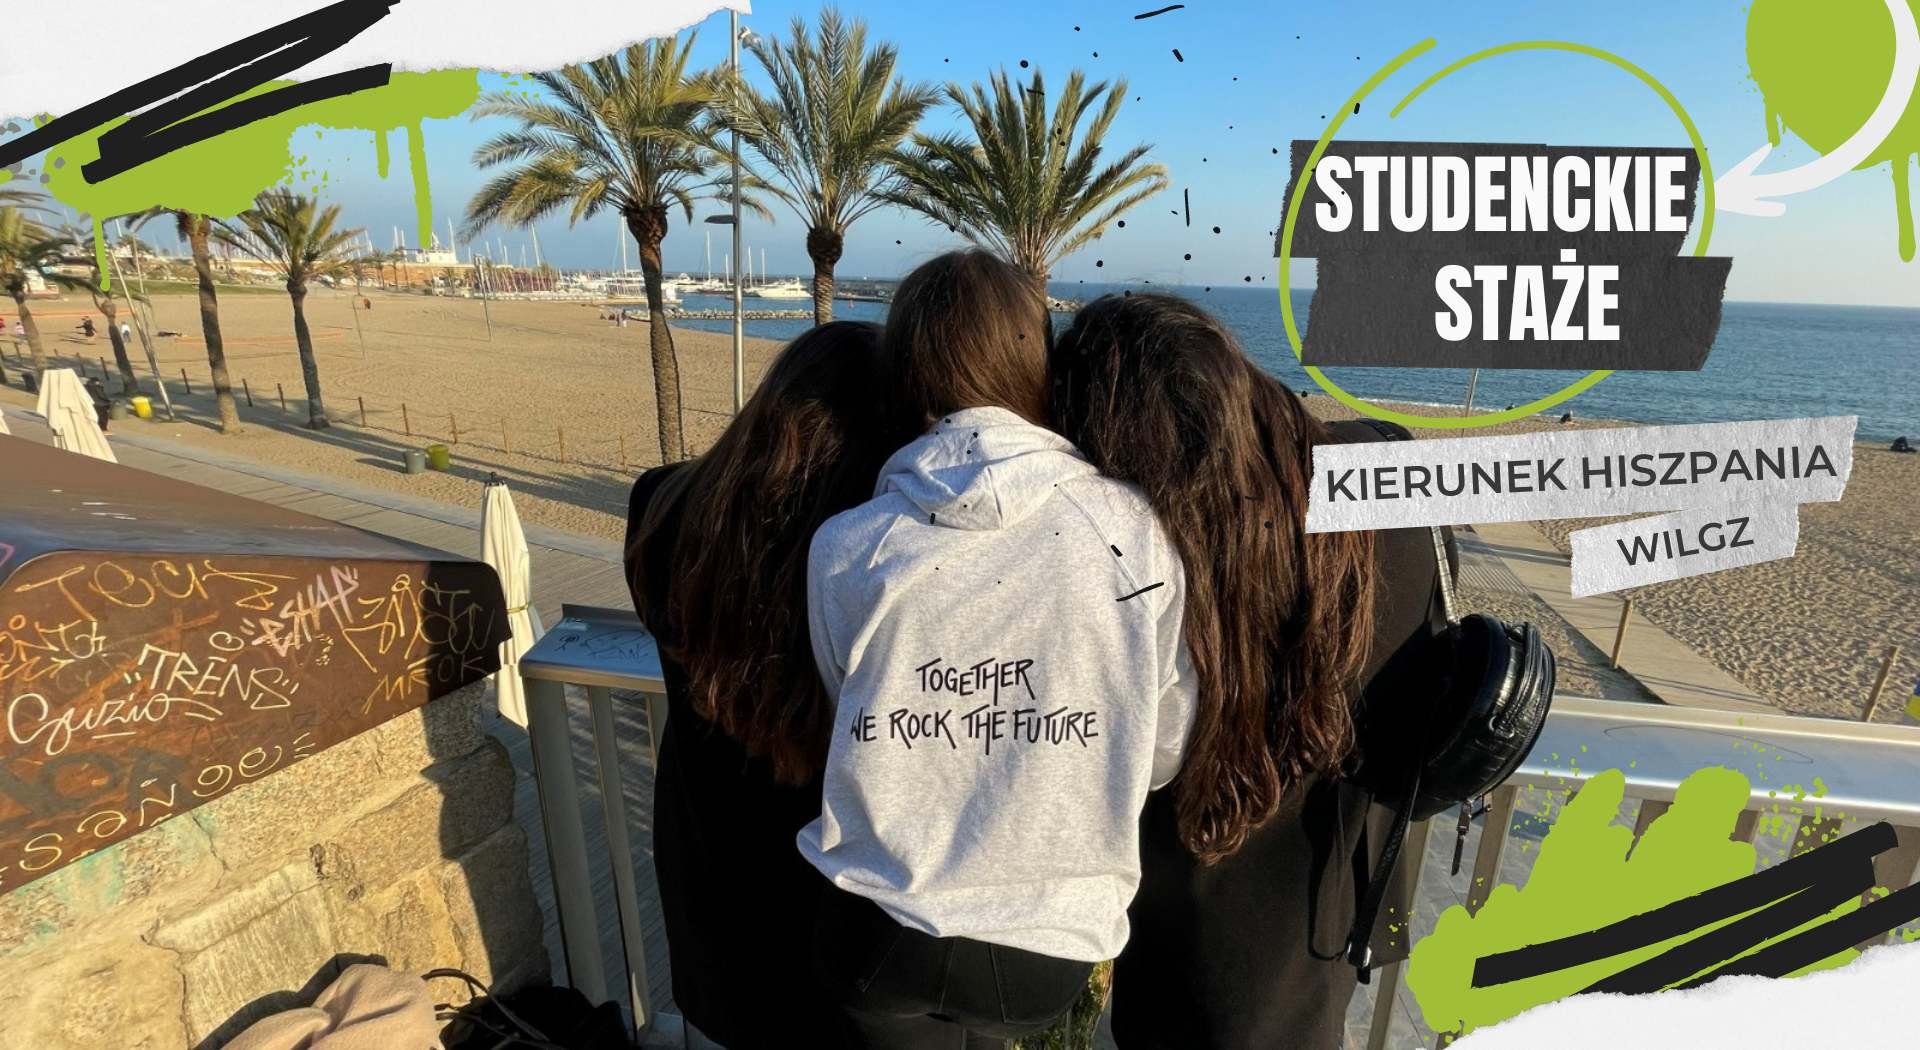 Zdjęcie przedstawia trzy studentki stojące pobok siebie plecami do obiektywu. Studentki patrzą się na plaże. Przed plażą rosną palmy. W lewym górnym rogu zdjęcia znajduje się marina. W prawym górnym rogu zdjęcia widoczny jest napis: studenckie staże. Kierunek Hiszpania. WILIGZ.